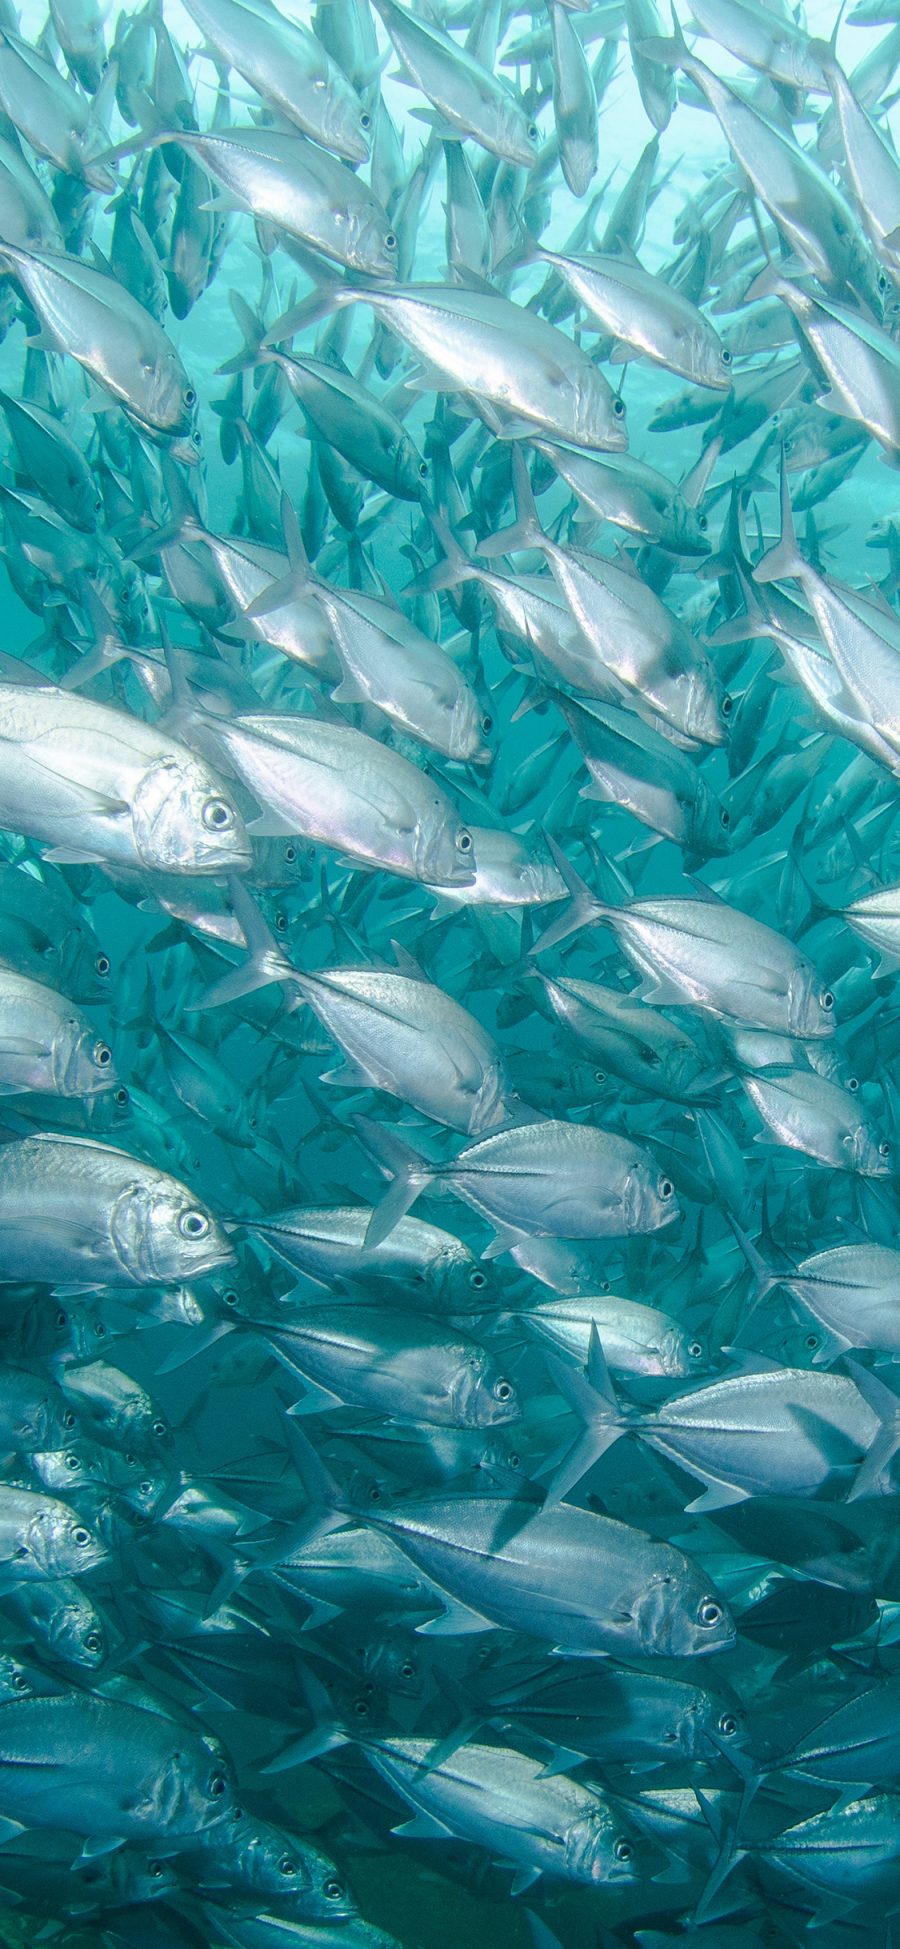 [2436×1125]海洋 海鱼 密集 群游 苹果手机壁纸图片